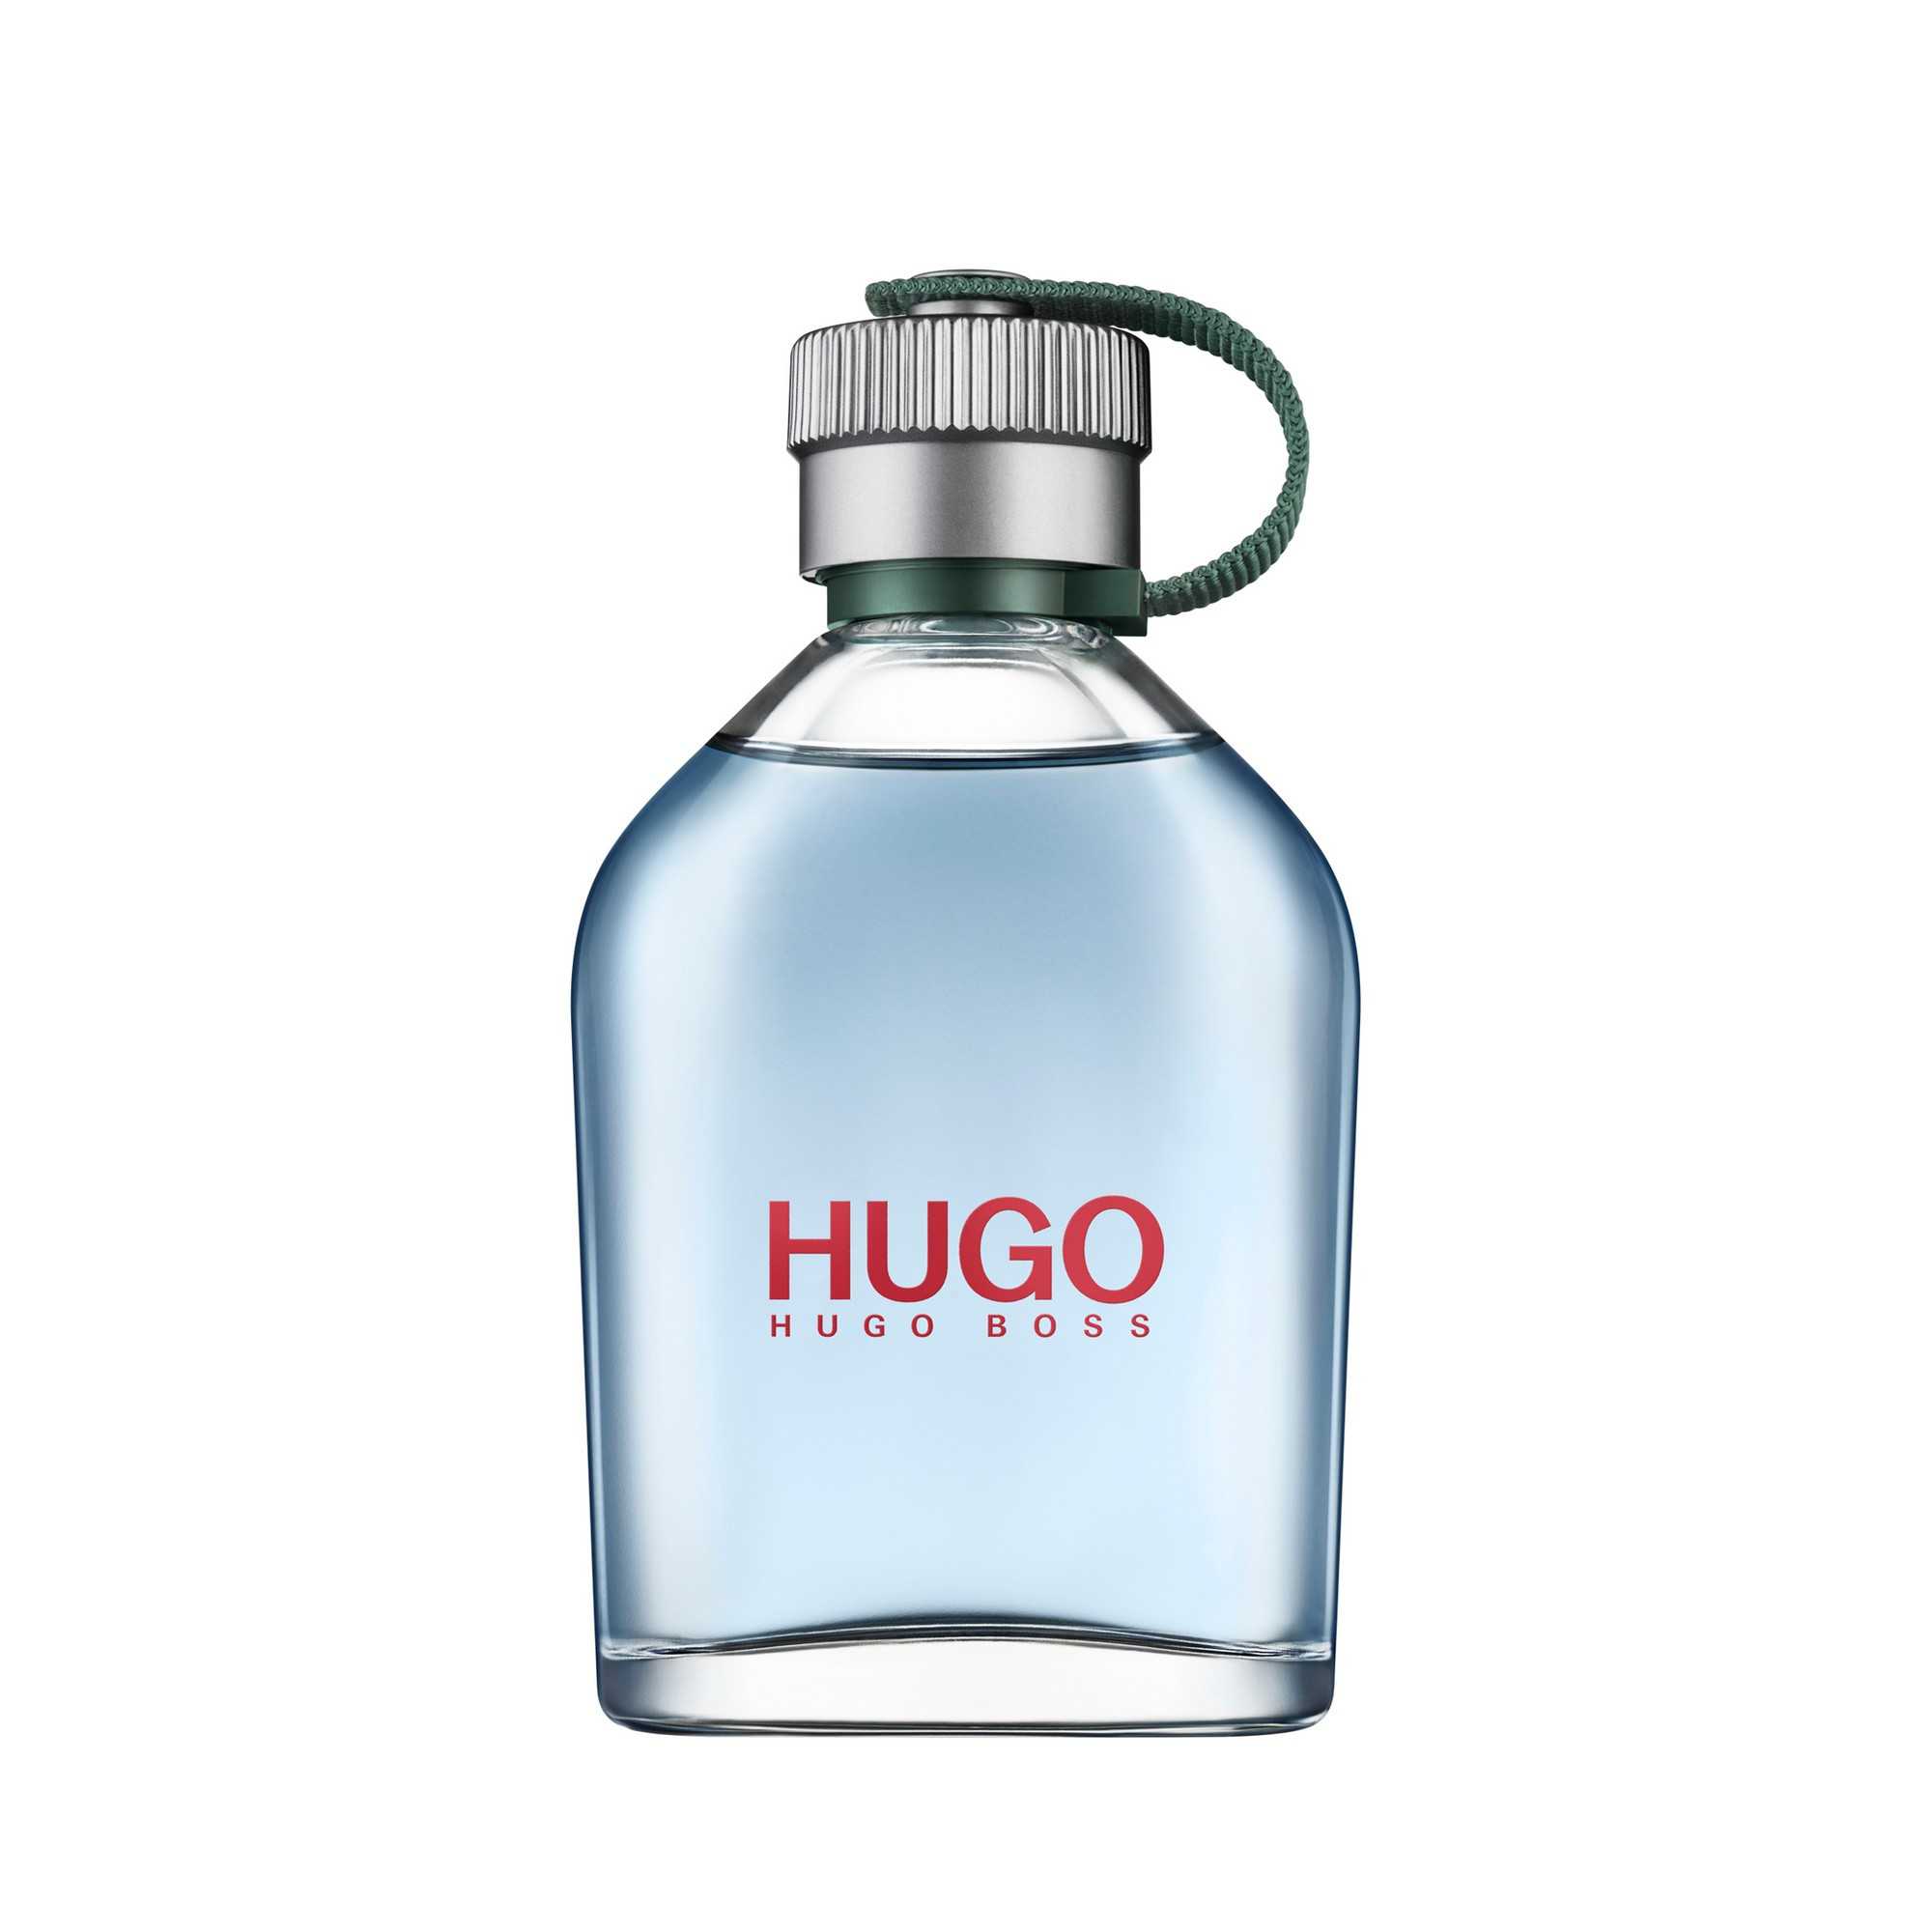 Hugo купить в москве. Hugo Boss men 125ml EDT. Hugo Boss Hugo men 100 мл. Hugo Boss man 125 ml. Hugo Boss Hugo man 200ml.